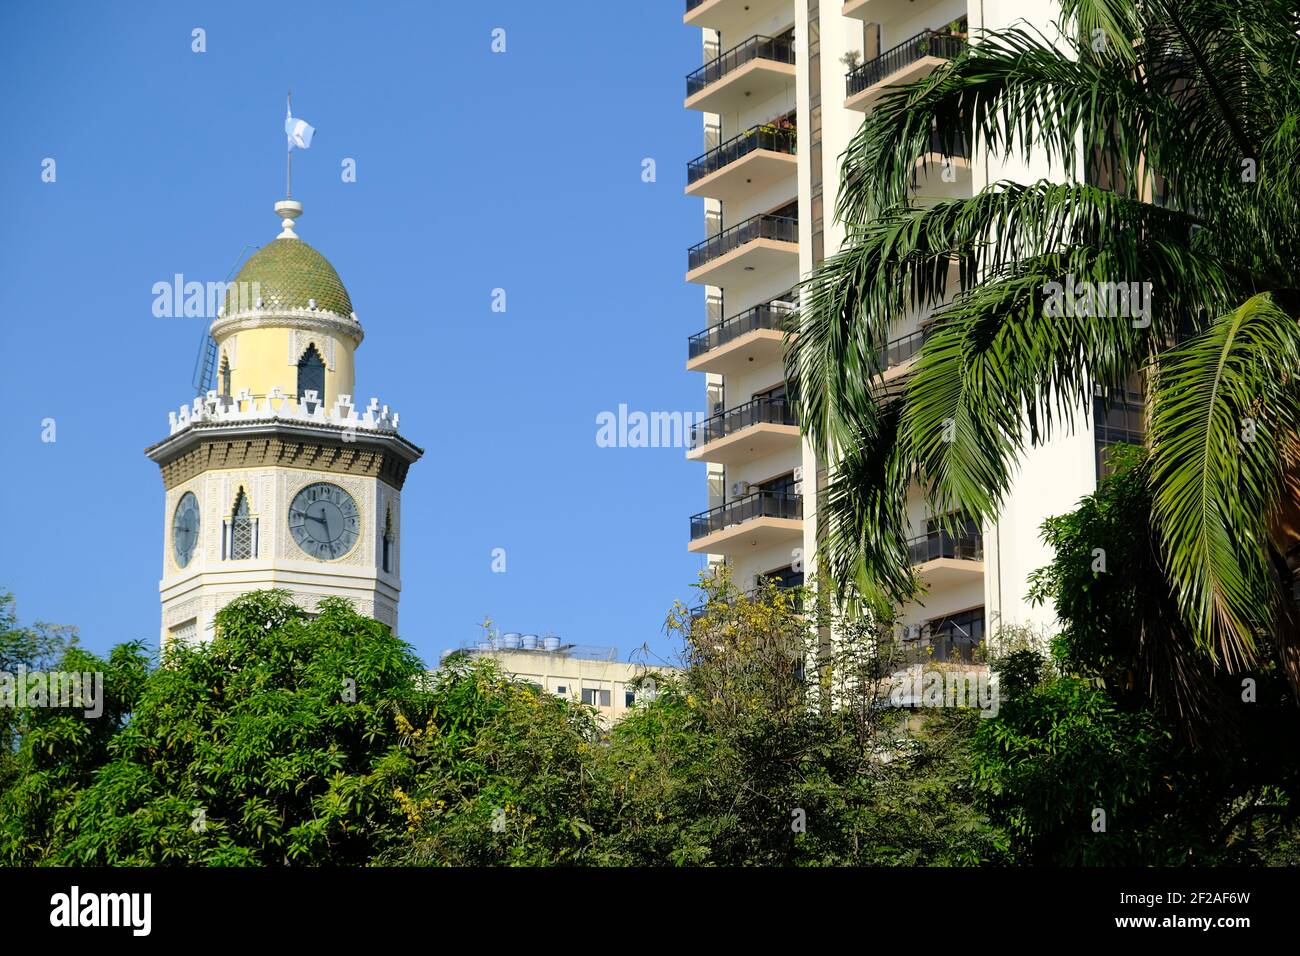 Equateur Guayaquil - Torre Morisca avec une tour d'horloge à dôme Banque D'Images